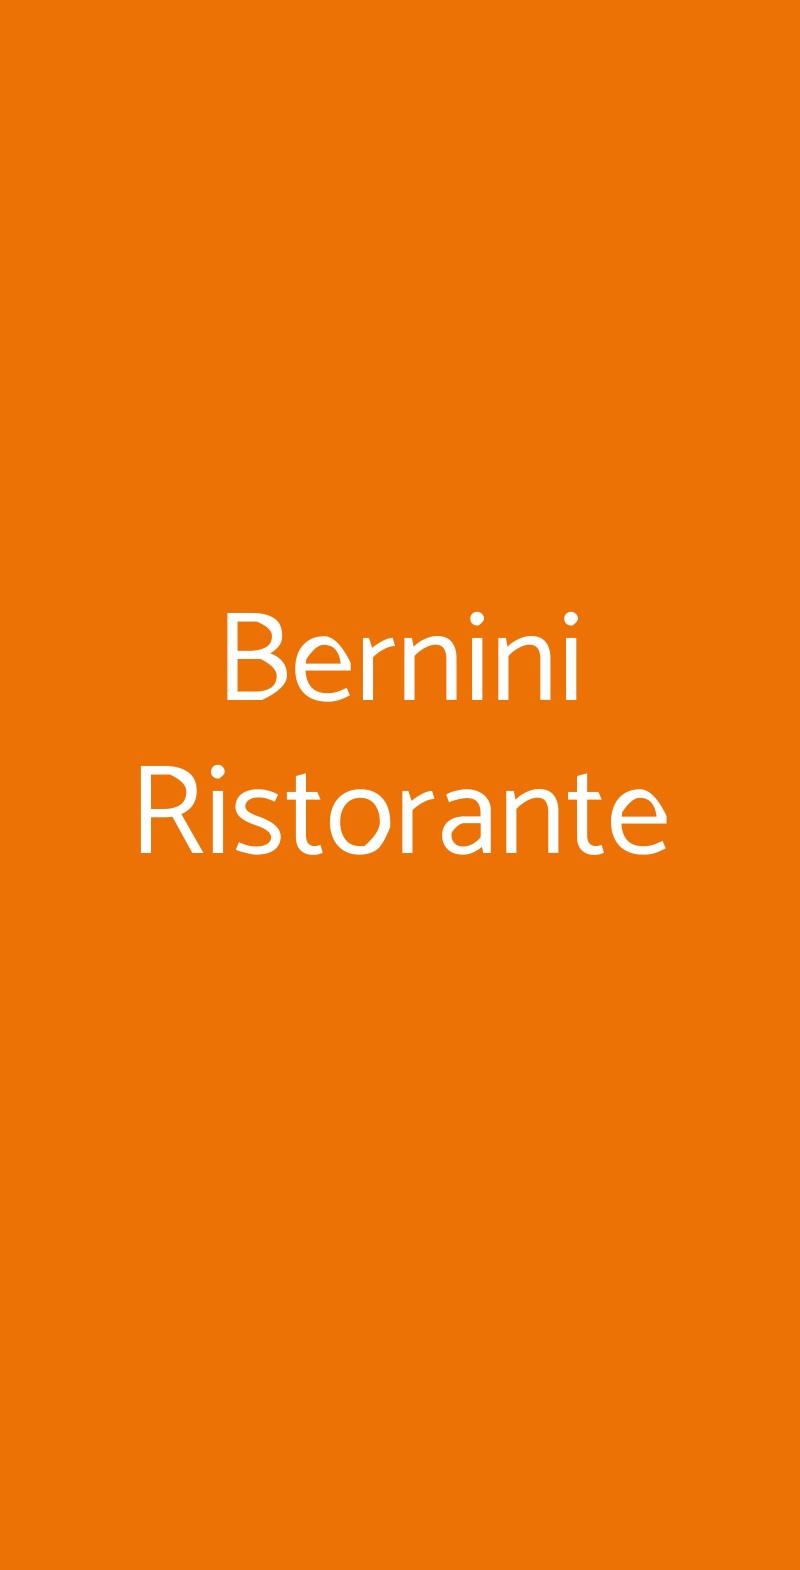 Bernini Ristorante Roma menù 1 pagina